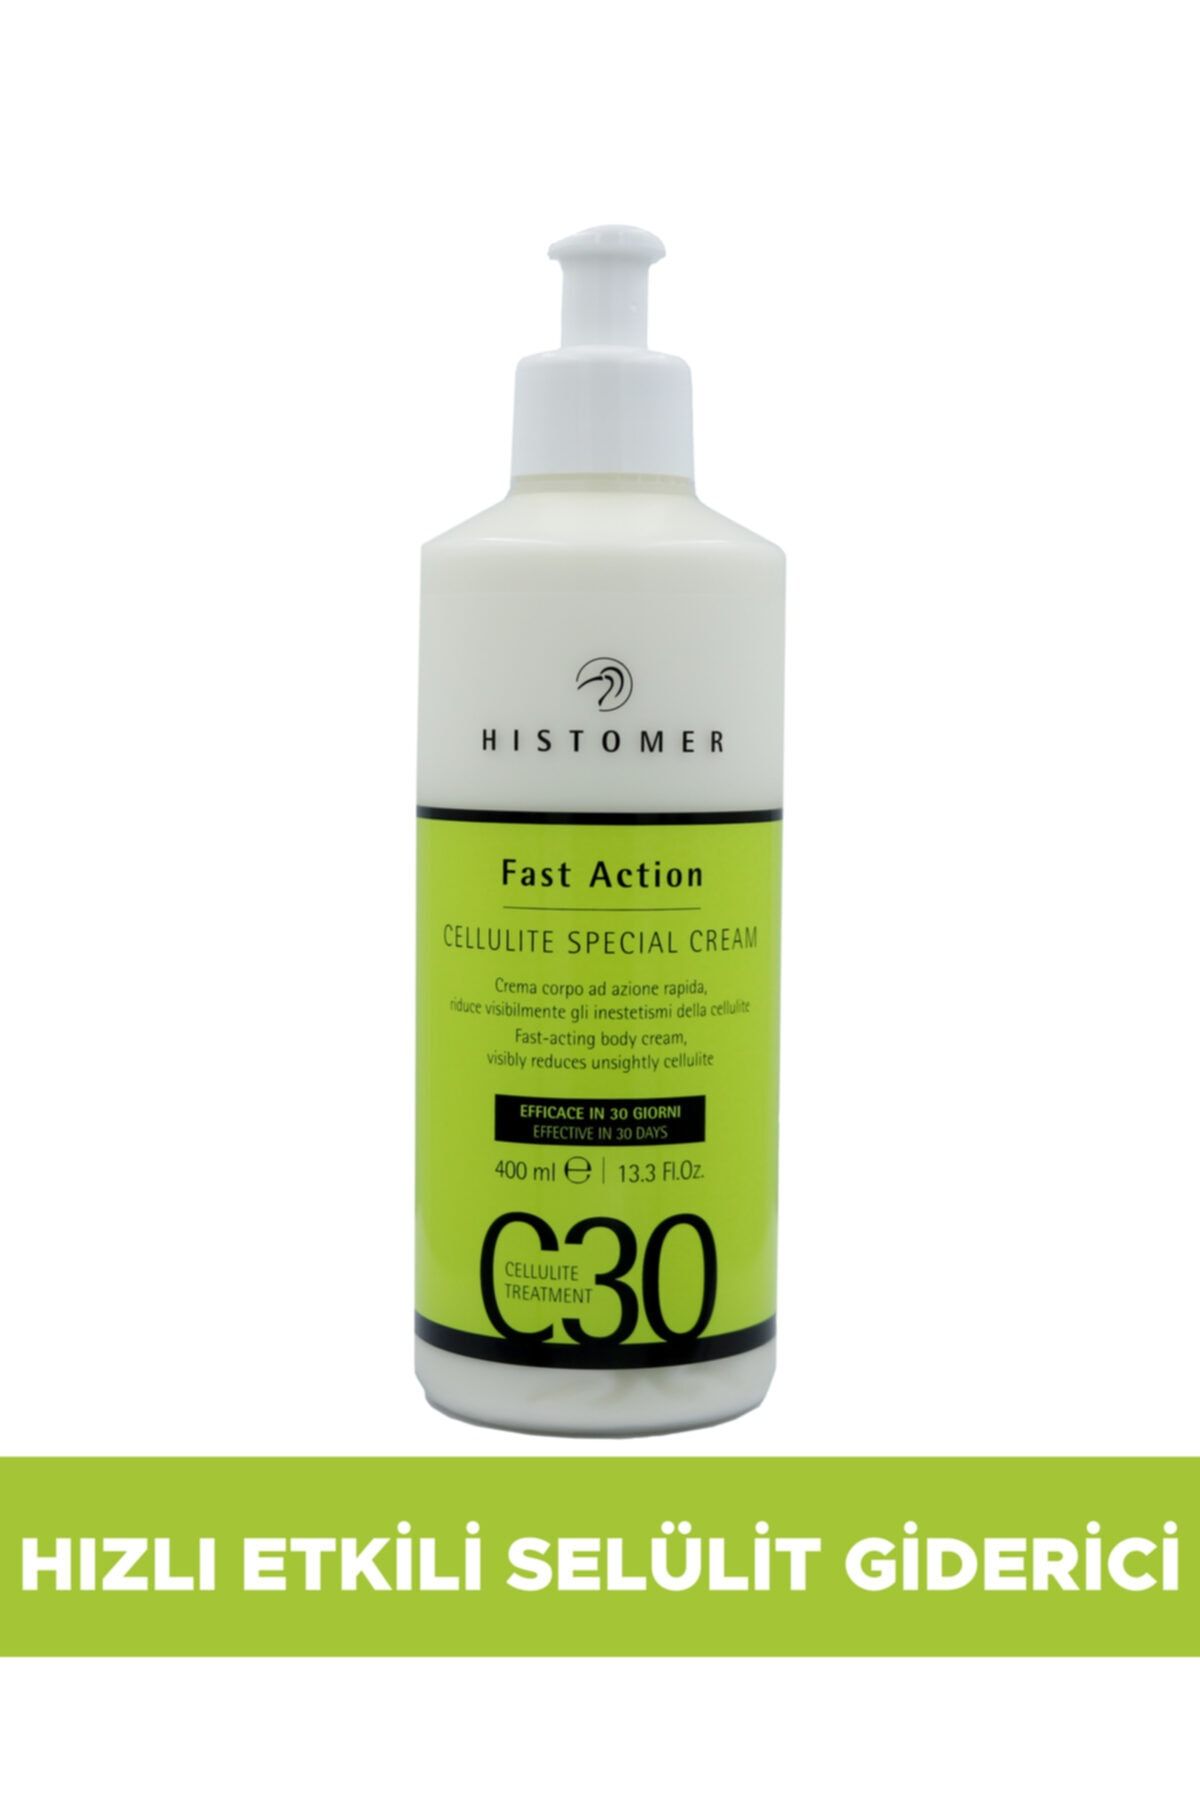 Histomer Hızlı Etkili Selülit Giderici Vücut Bakım Kremi - C30 Fast Action 400 ml